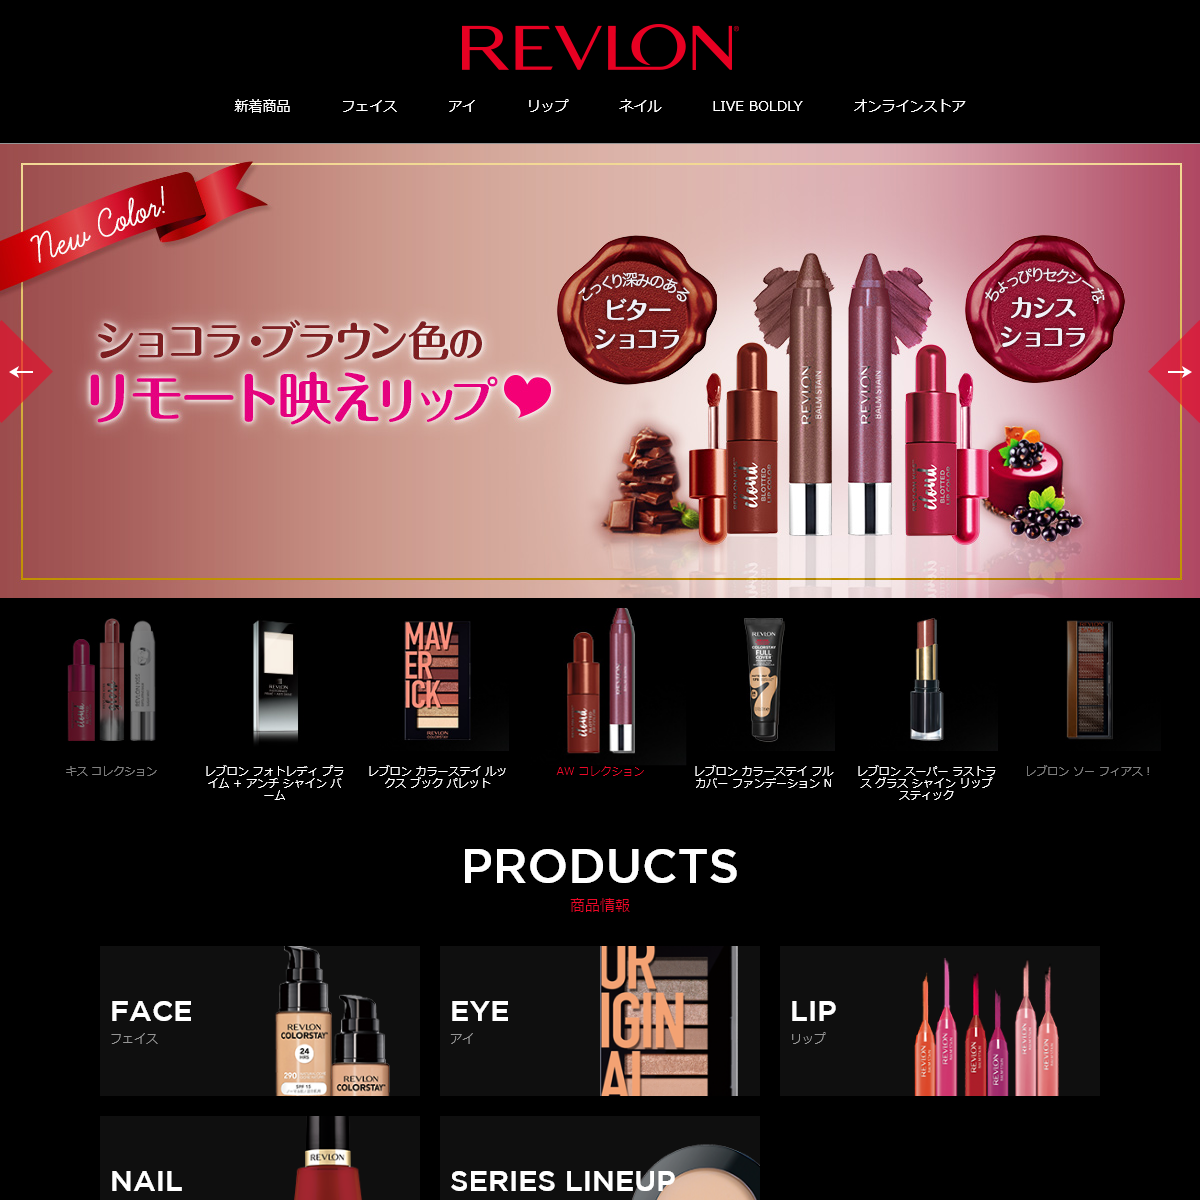 A complete backup of revlon-japan.com